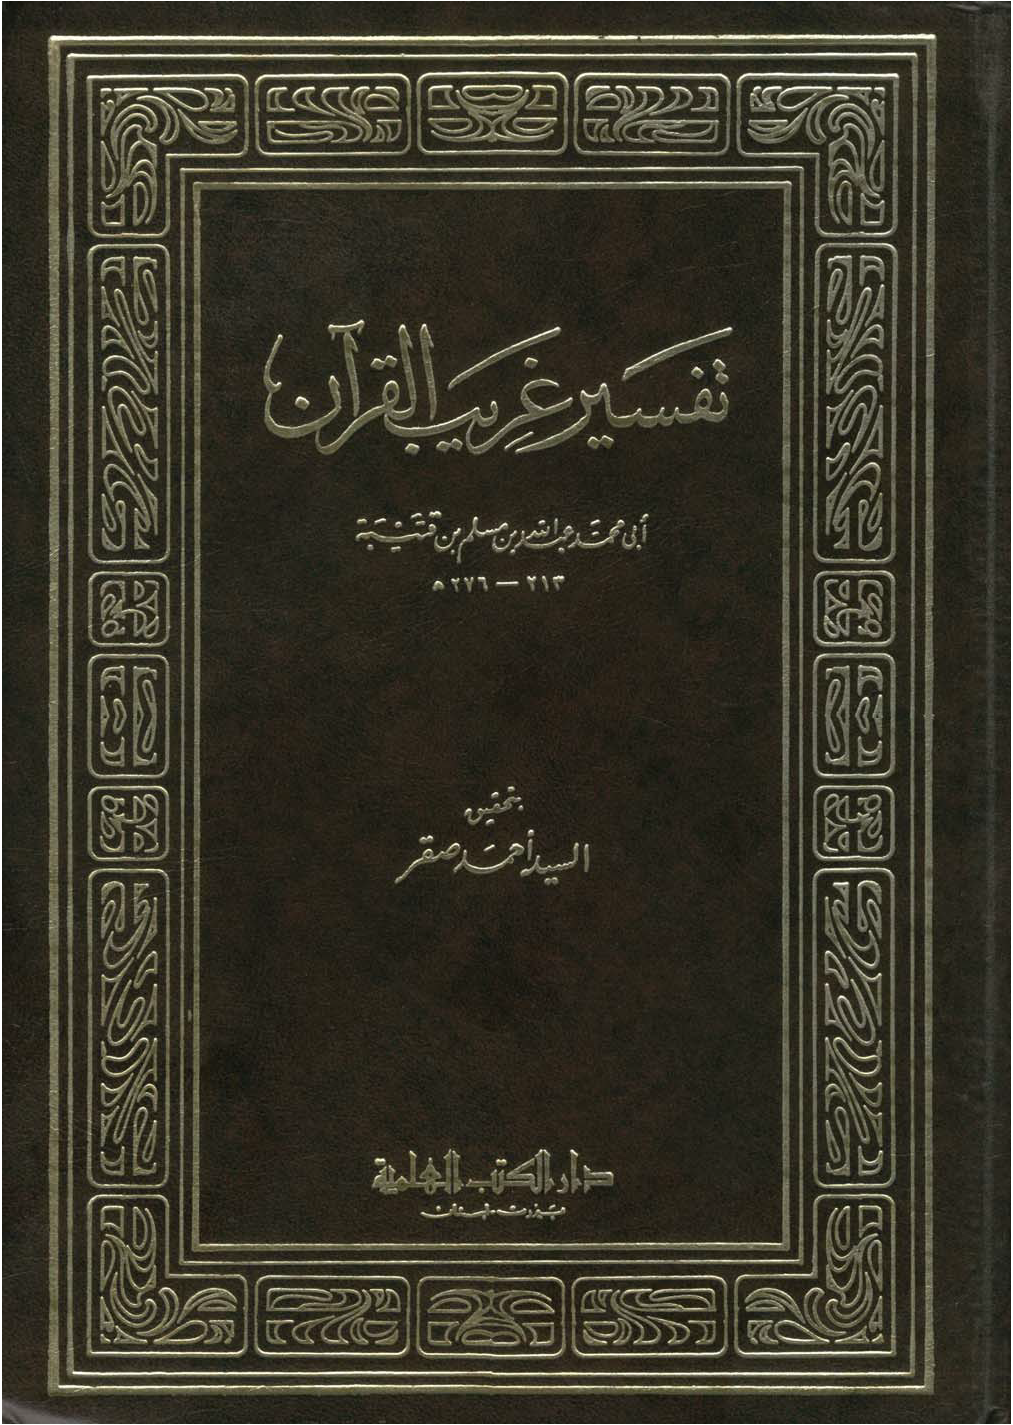 تحميل كتاب تفسير غريب القرآن (ابن قتيبة) لـِ: الإمام أبو محمد عبد الله بن مسلم بن قتيبة الدينوري (ت 276)